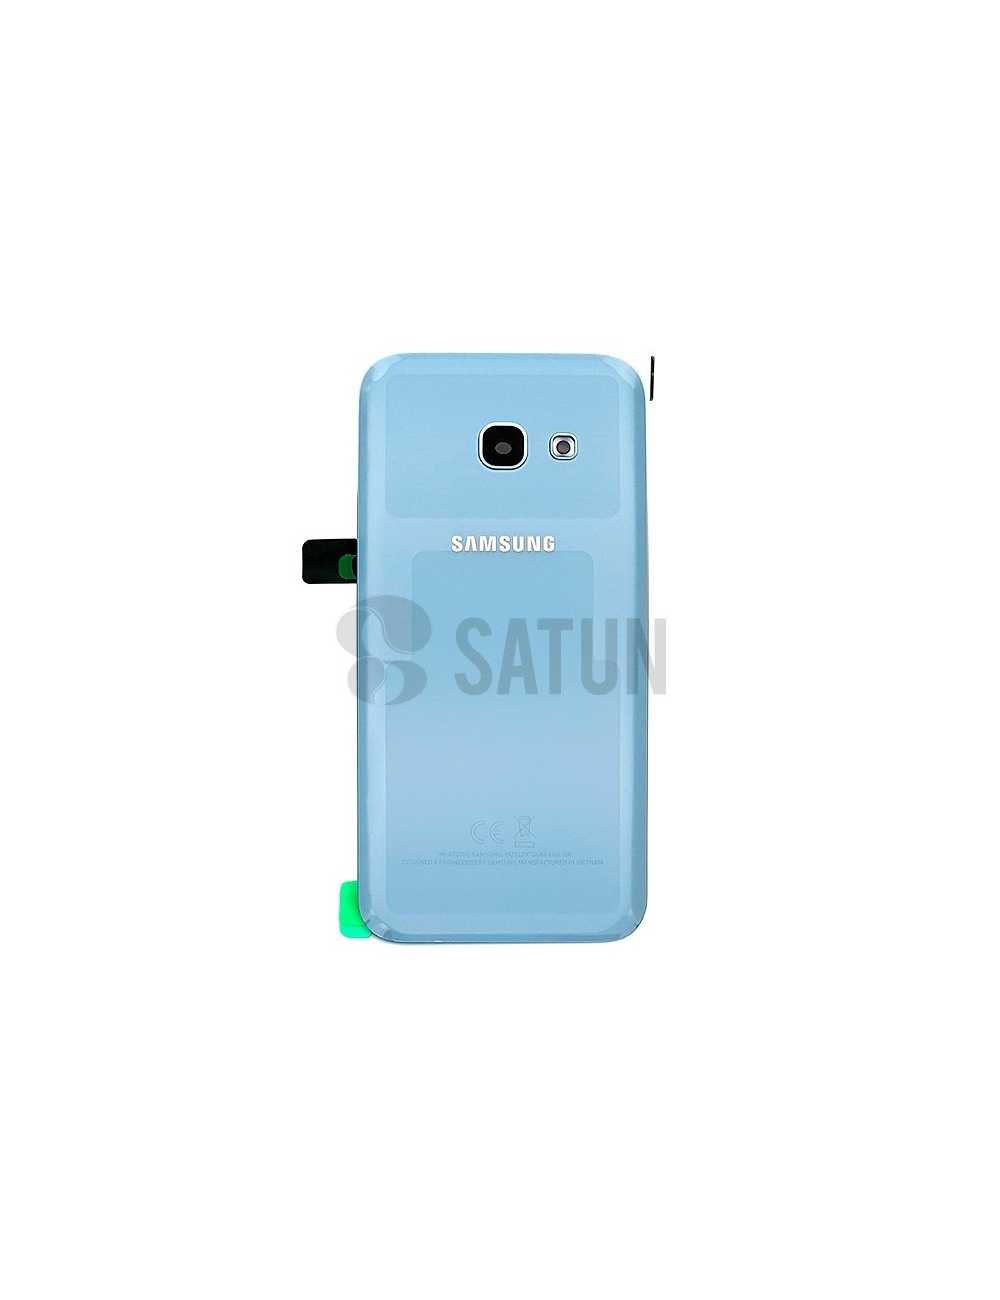 Tapa de batería Samsung Galaxy A3 2017 azul